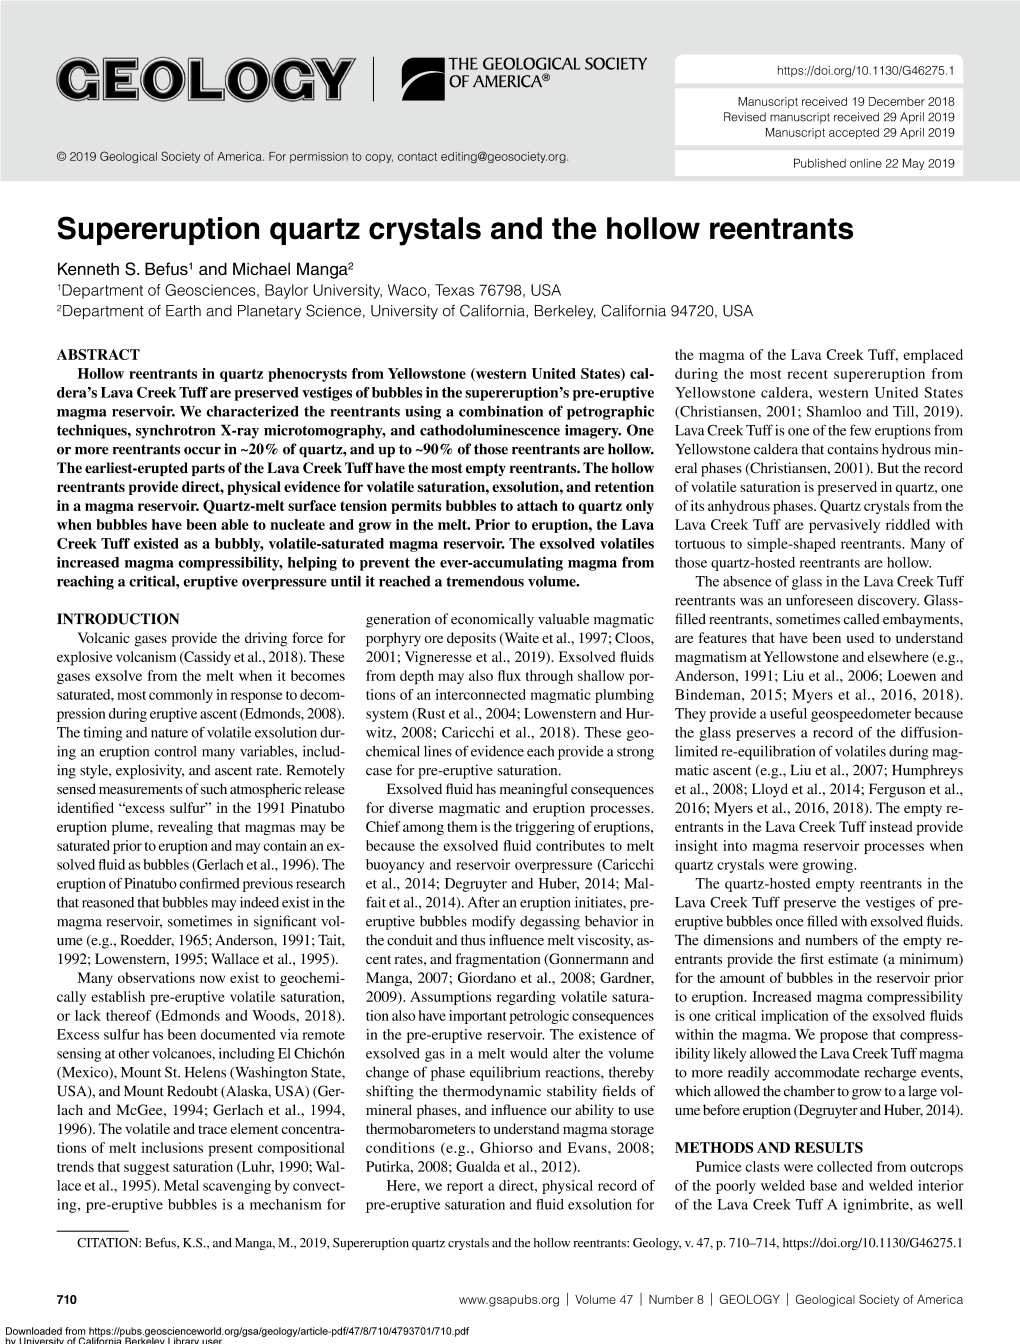 Supereruption Quartz Crystals and the Hollow Reentrants